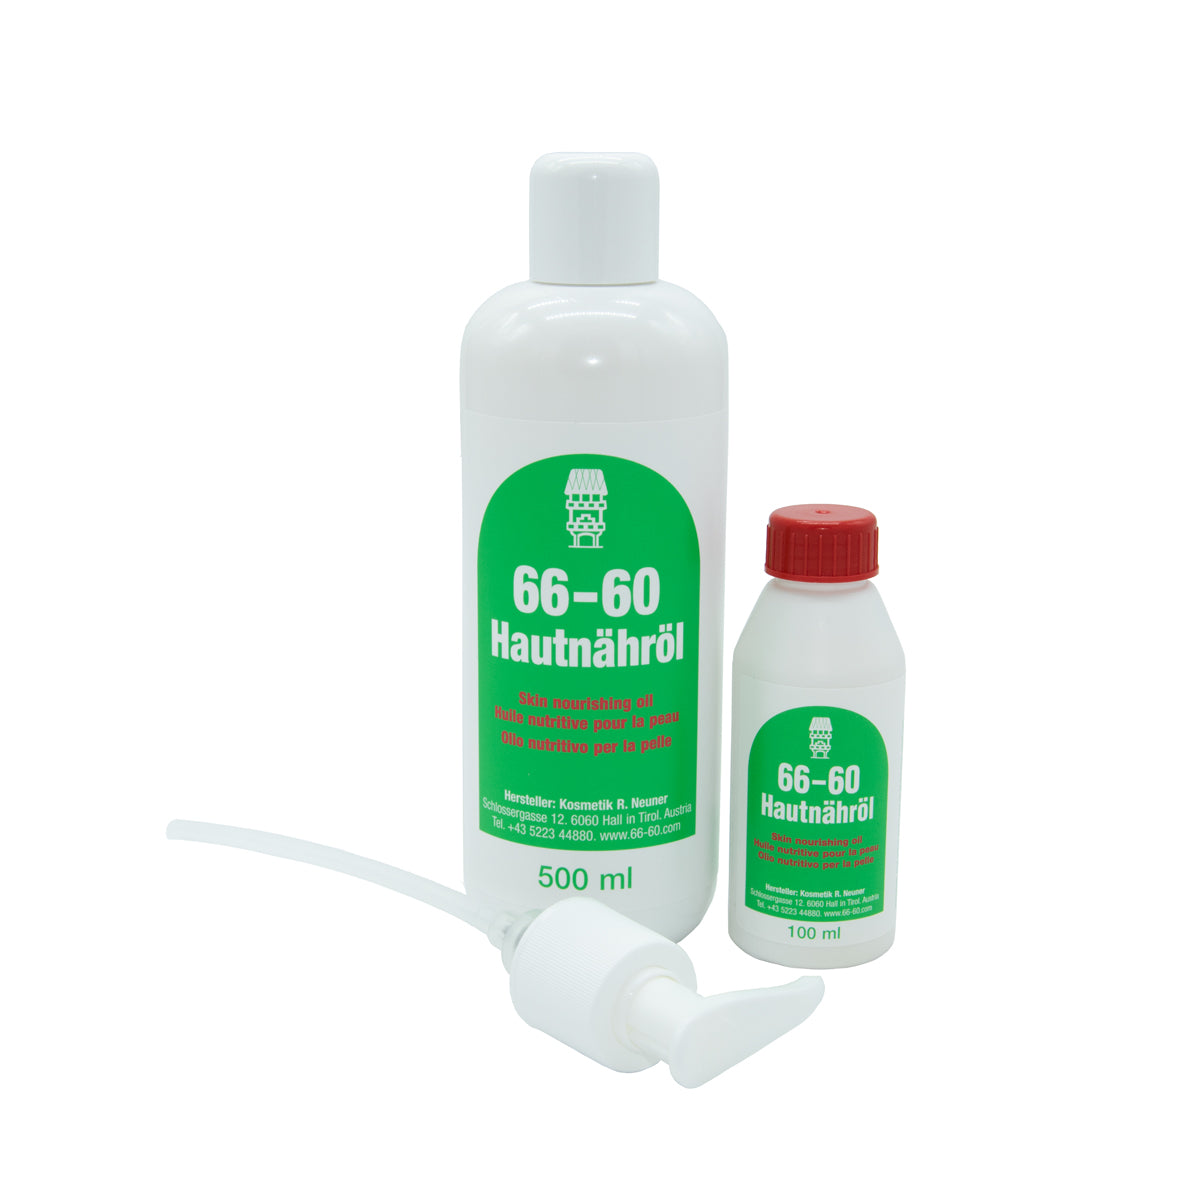 Hautnähröl 66-60 die sanfte Pflegeemulsion mit Vitamin E Set 500 ml und 100 ml